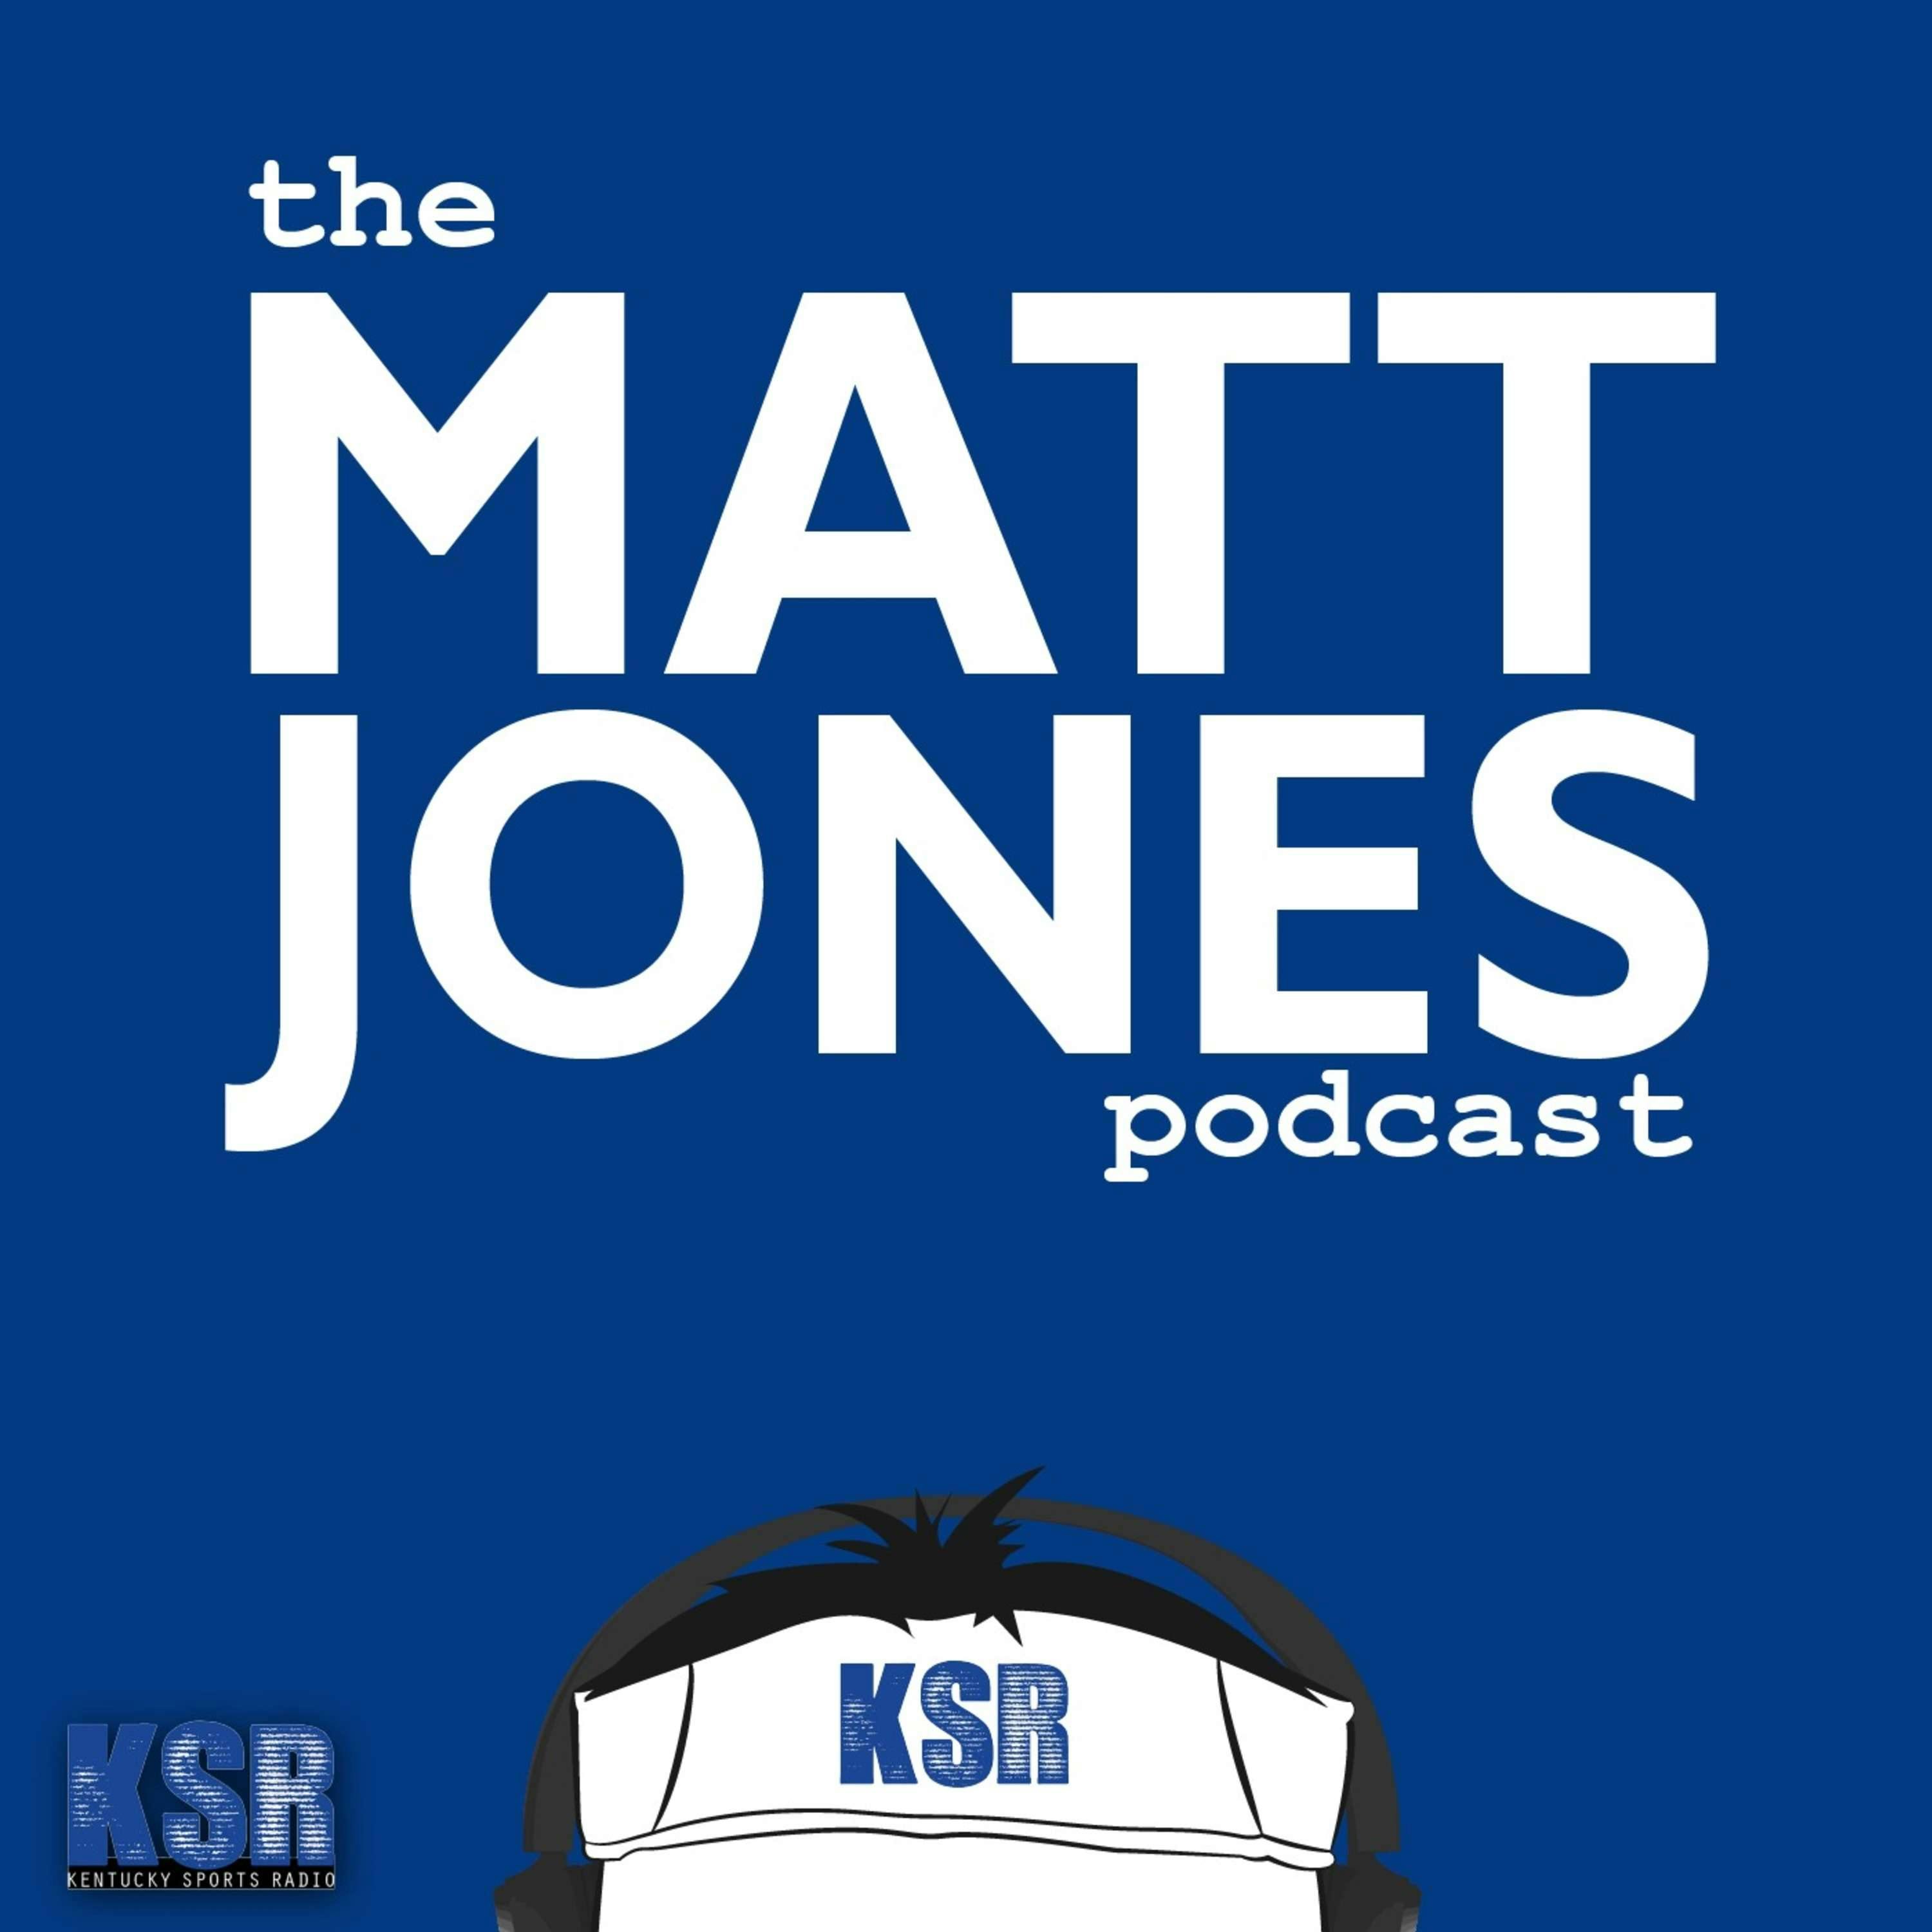 The Matt Jones Podcast: E38 Derby Handicapping Help & Oscar Combs